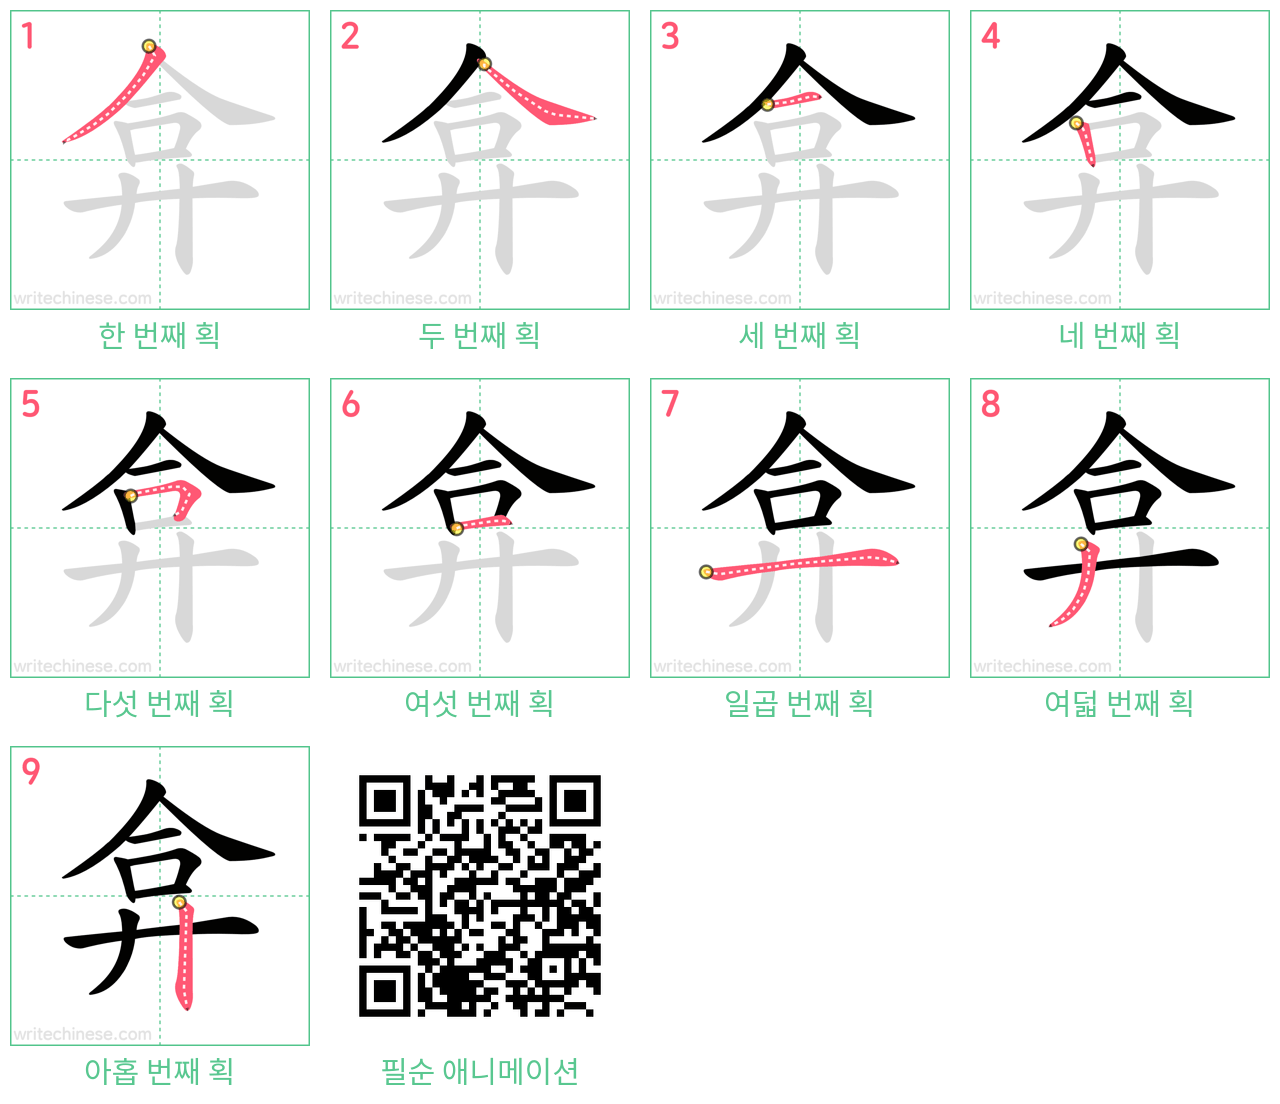 弇 step-by-step stroke order diagrams